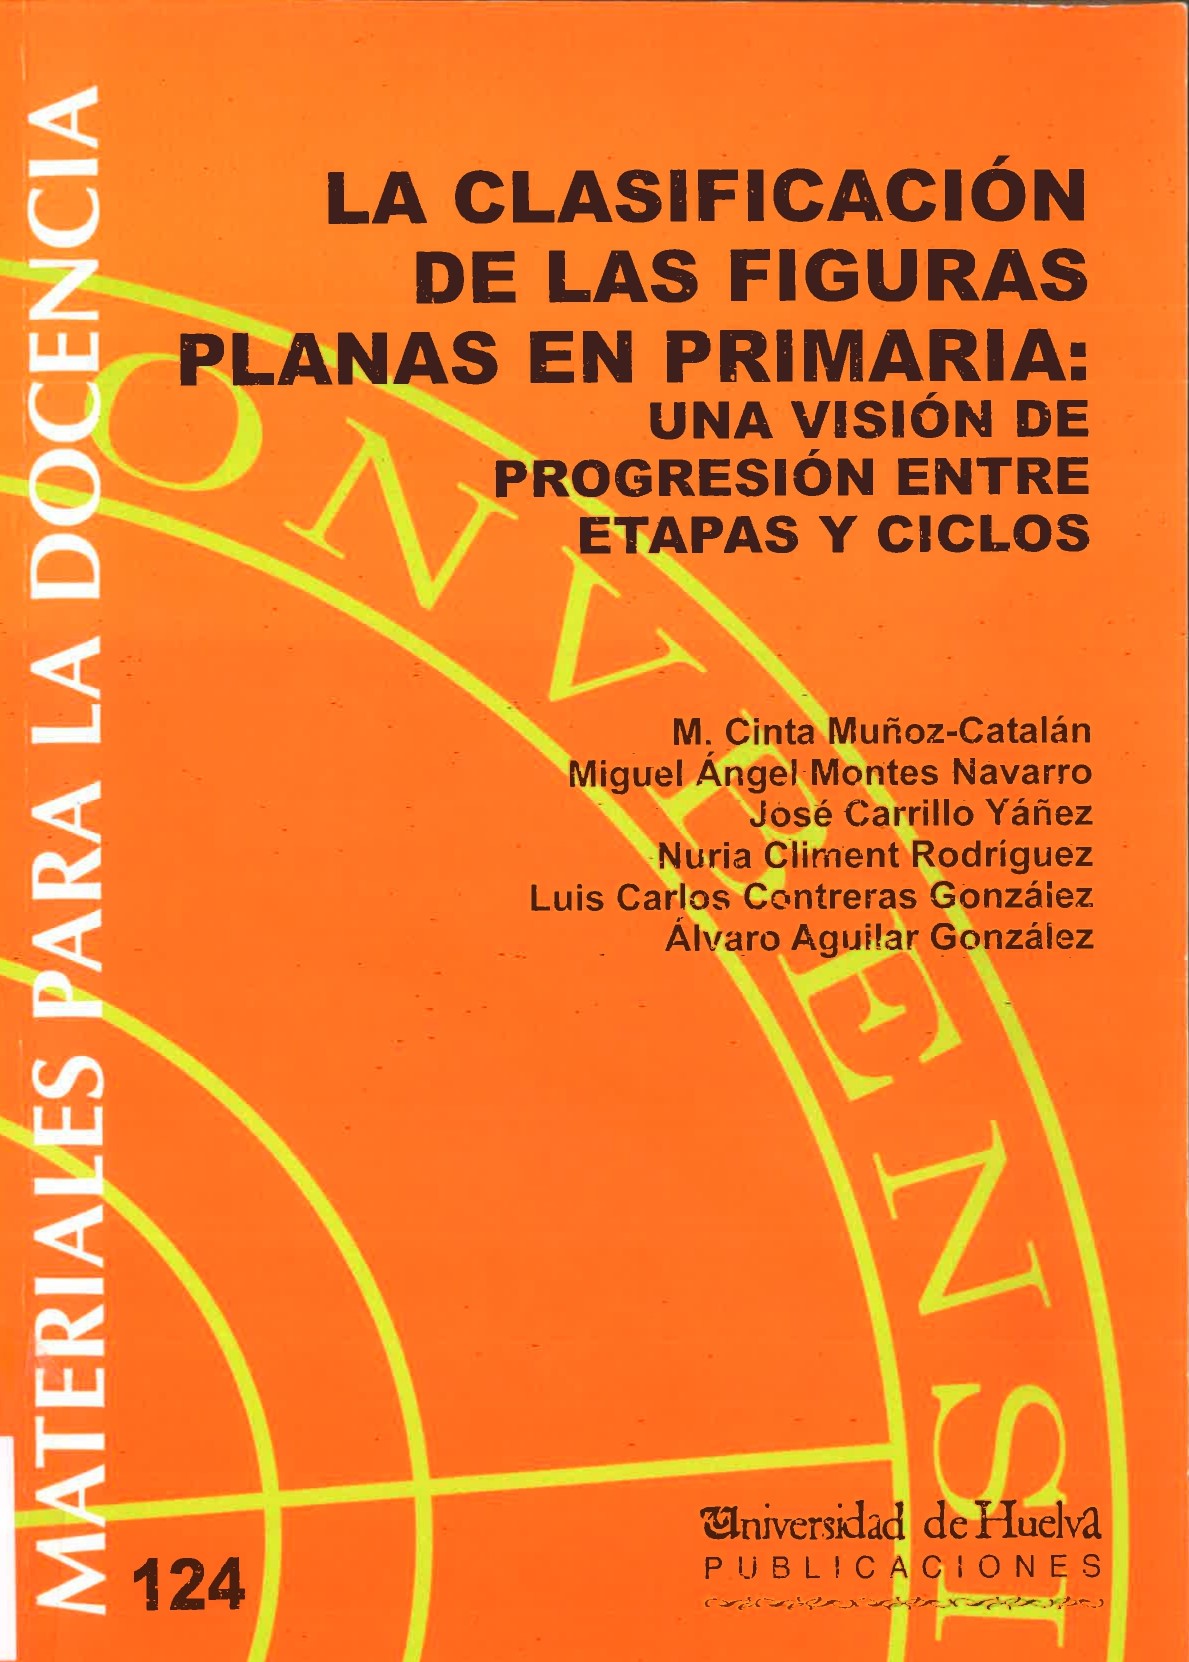 Imagen de portada del libro La clasificación de las figuras planas en Primaria